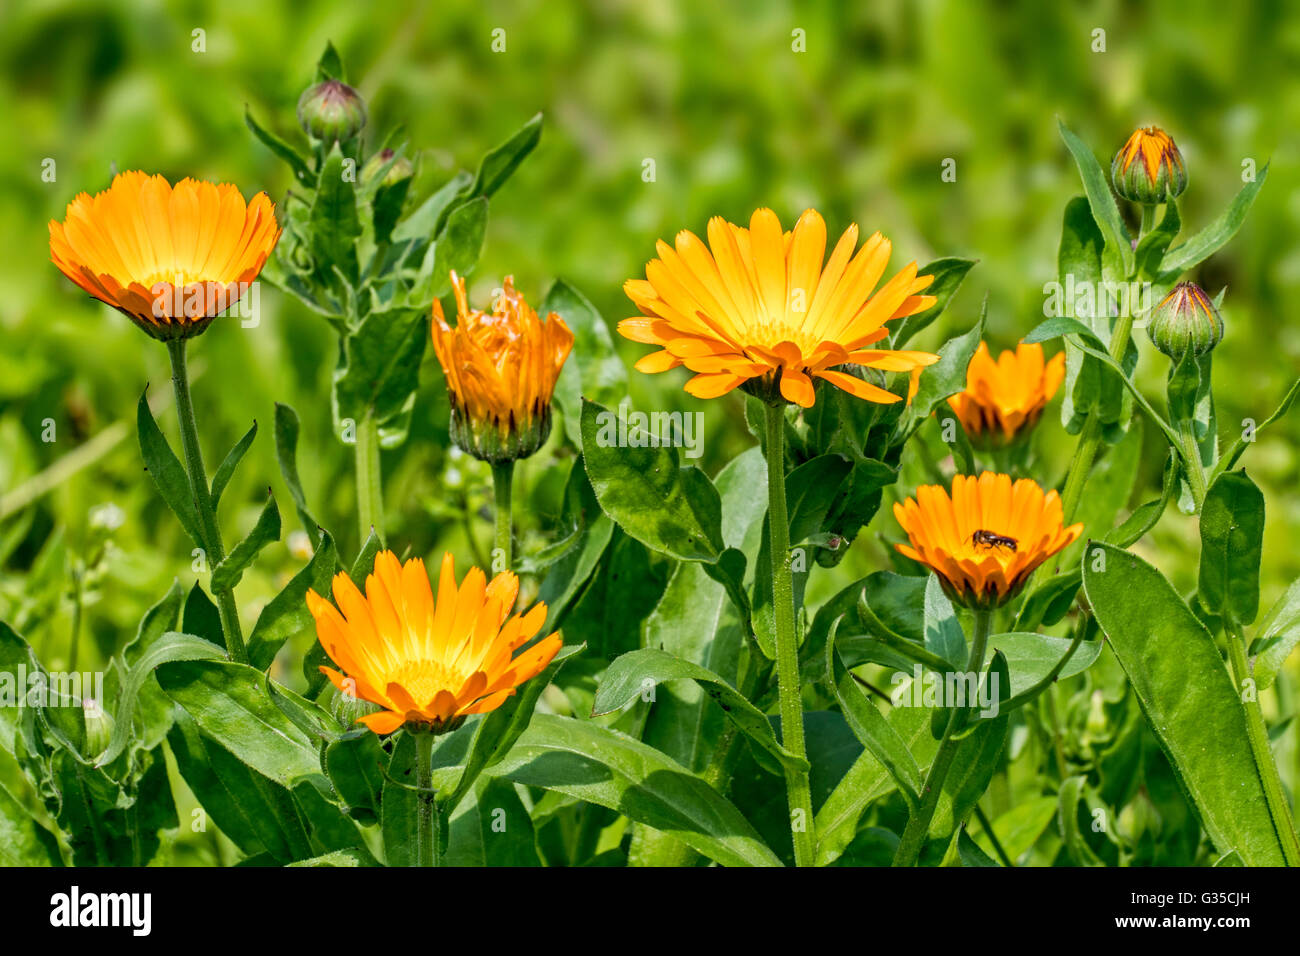 Pot marigold / ruddles / common marigold / garden marigold (Calendula officinalis) in flower Stock Photo